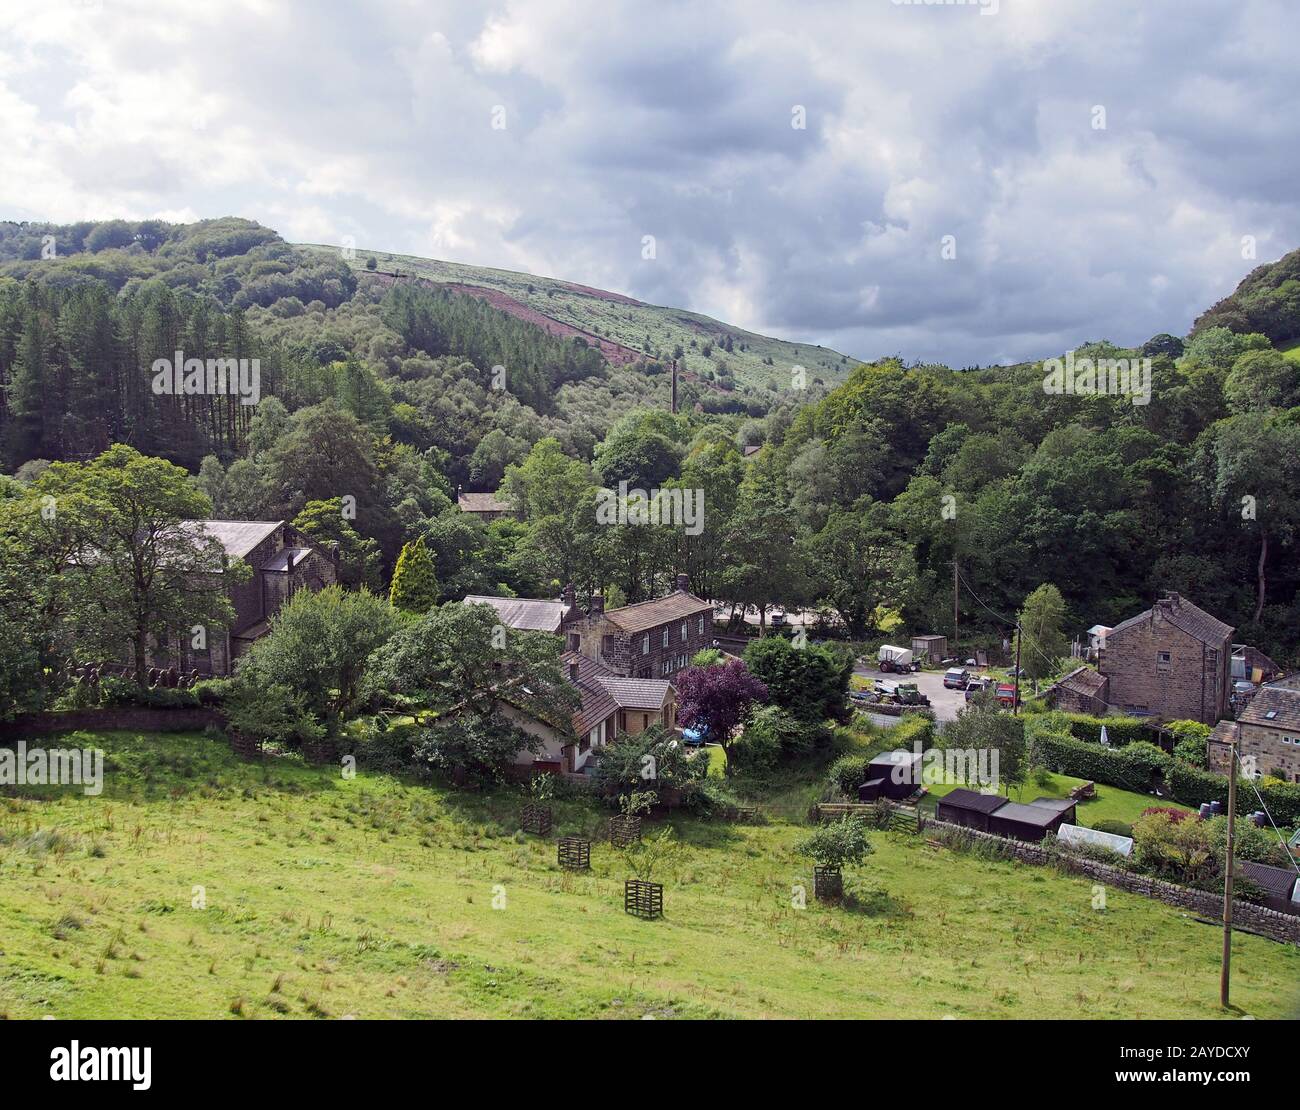 le petit village de cragg vale, dans le yorkshire de l'ouest, est entouré de collines et d'arbres de pennine Banque D'Images